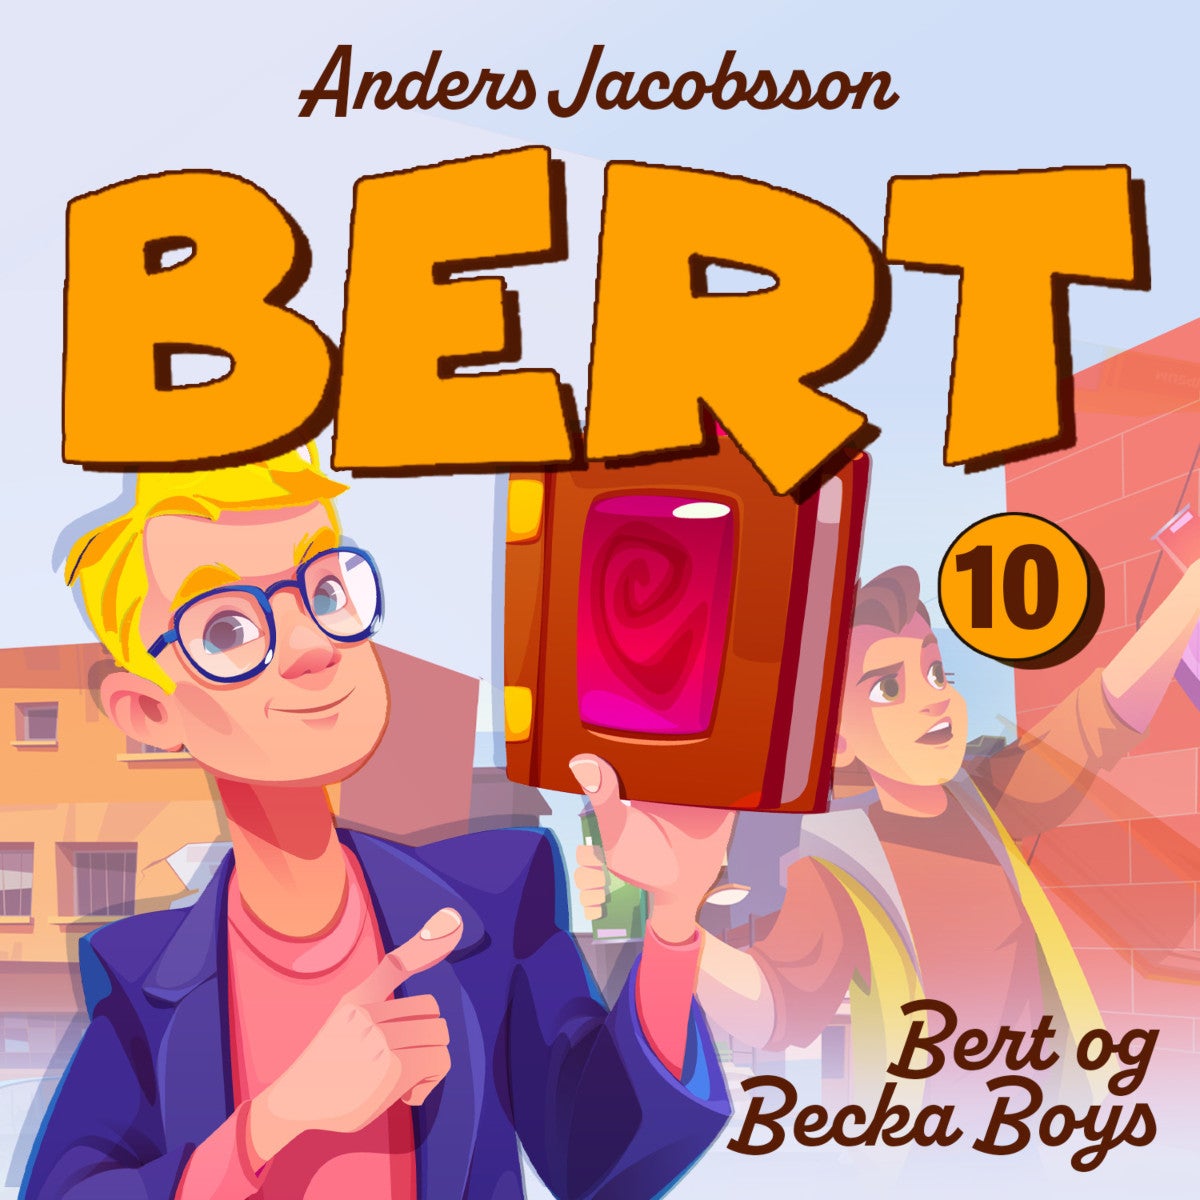 Bert og Becka boys av Anders Jacobsson